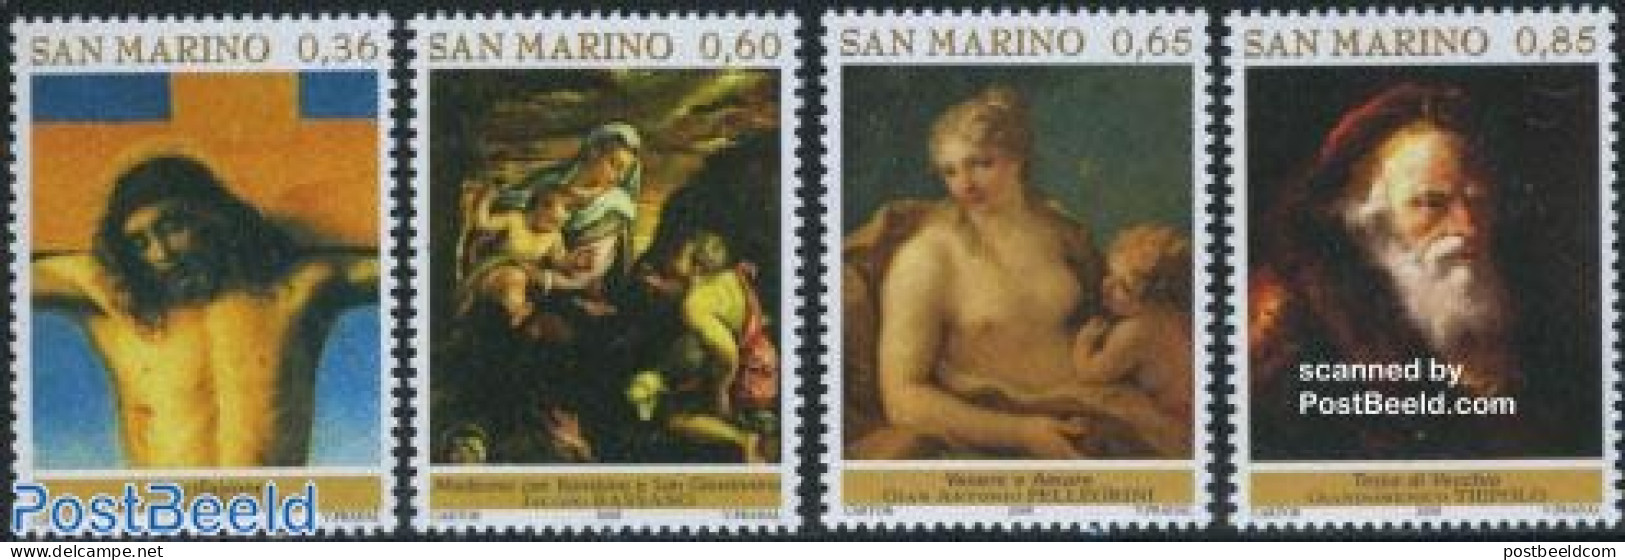 San Marino 2008 Returned Masterpieces Of Art 4v, Mint NH, Art - Nude Paintings - Paintings - Unused Stamps